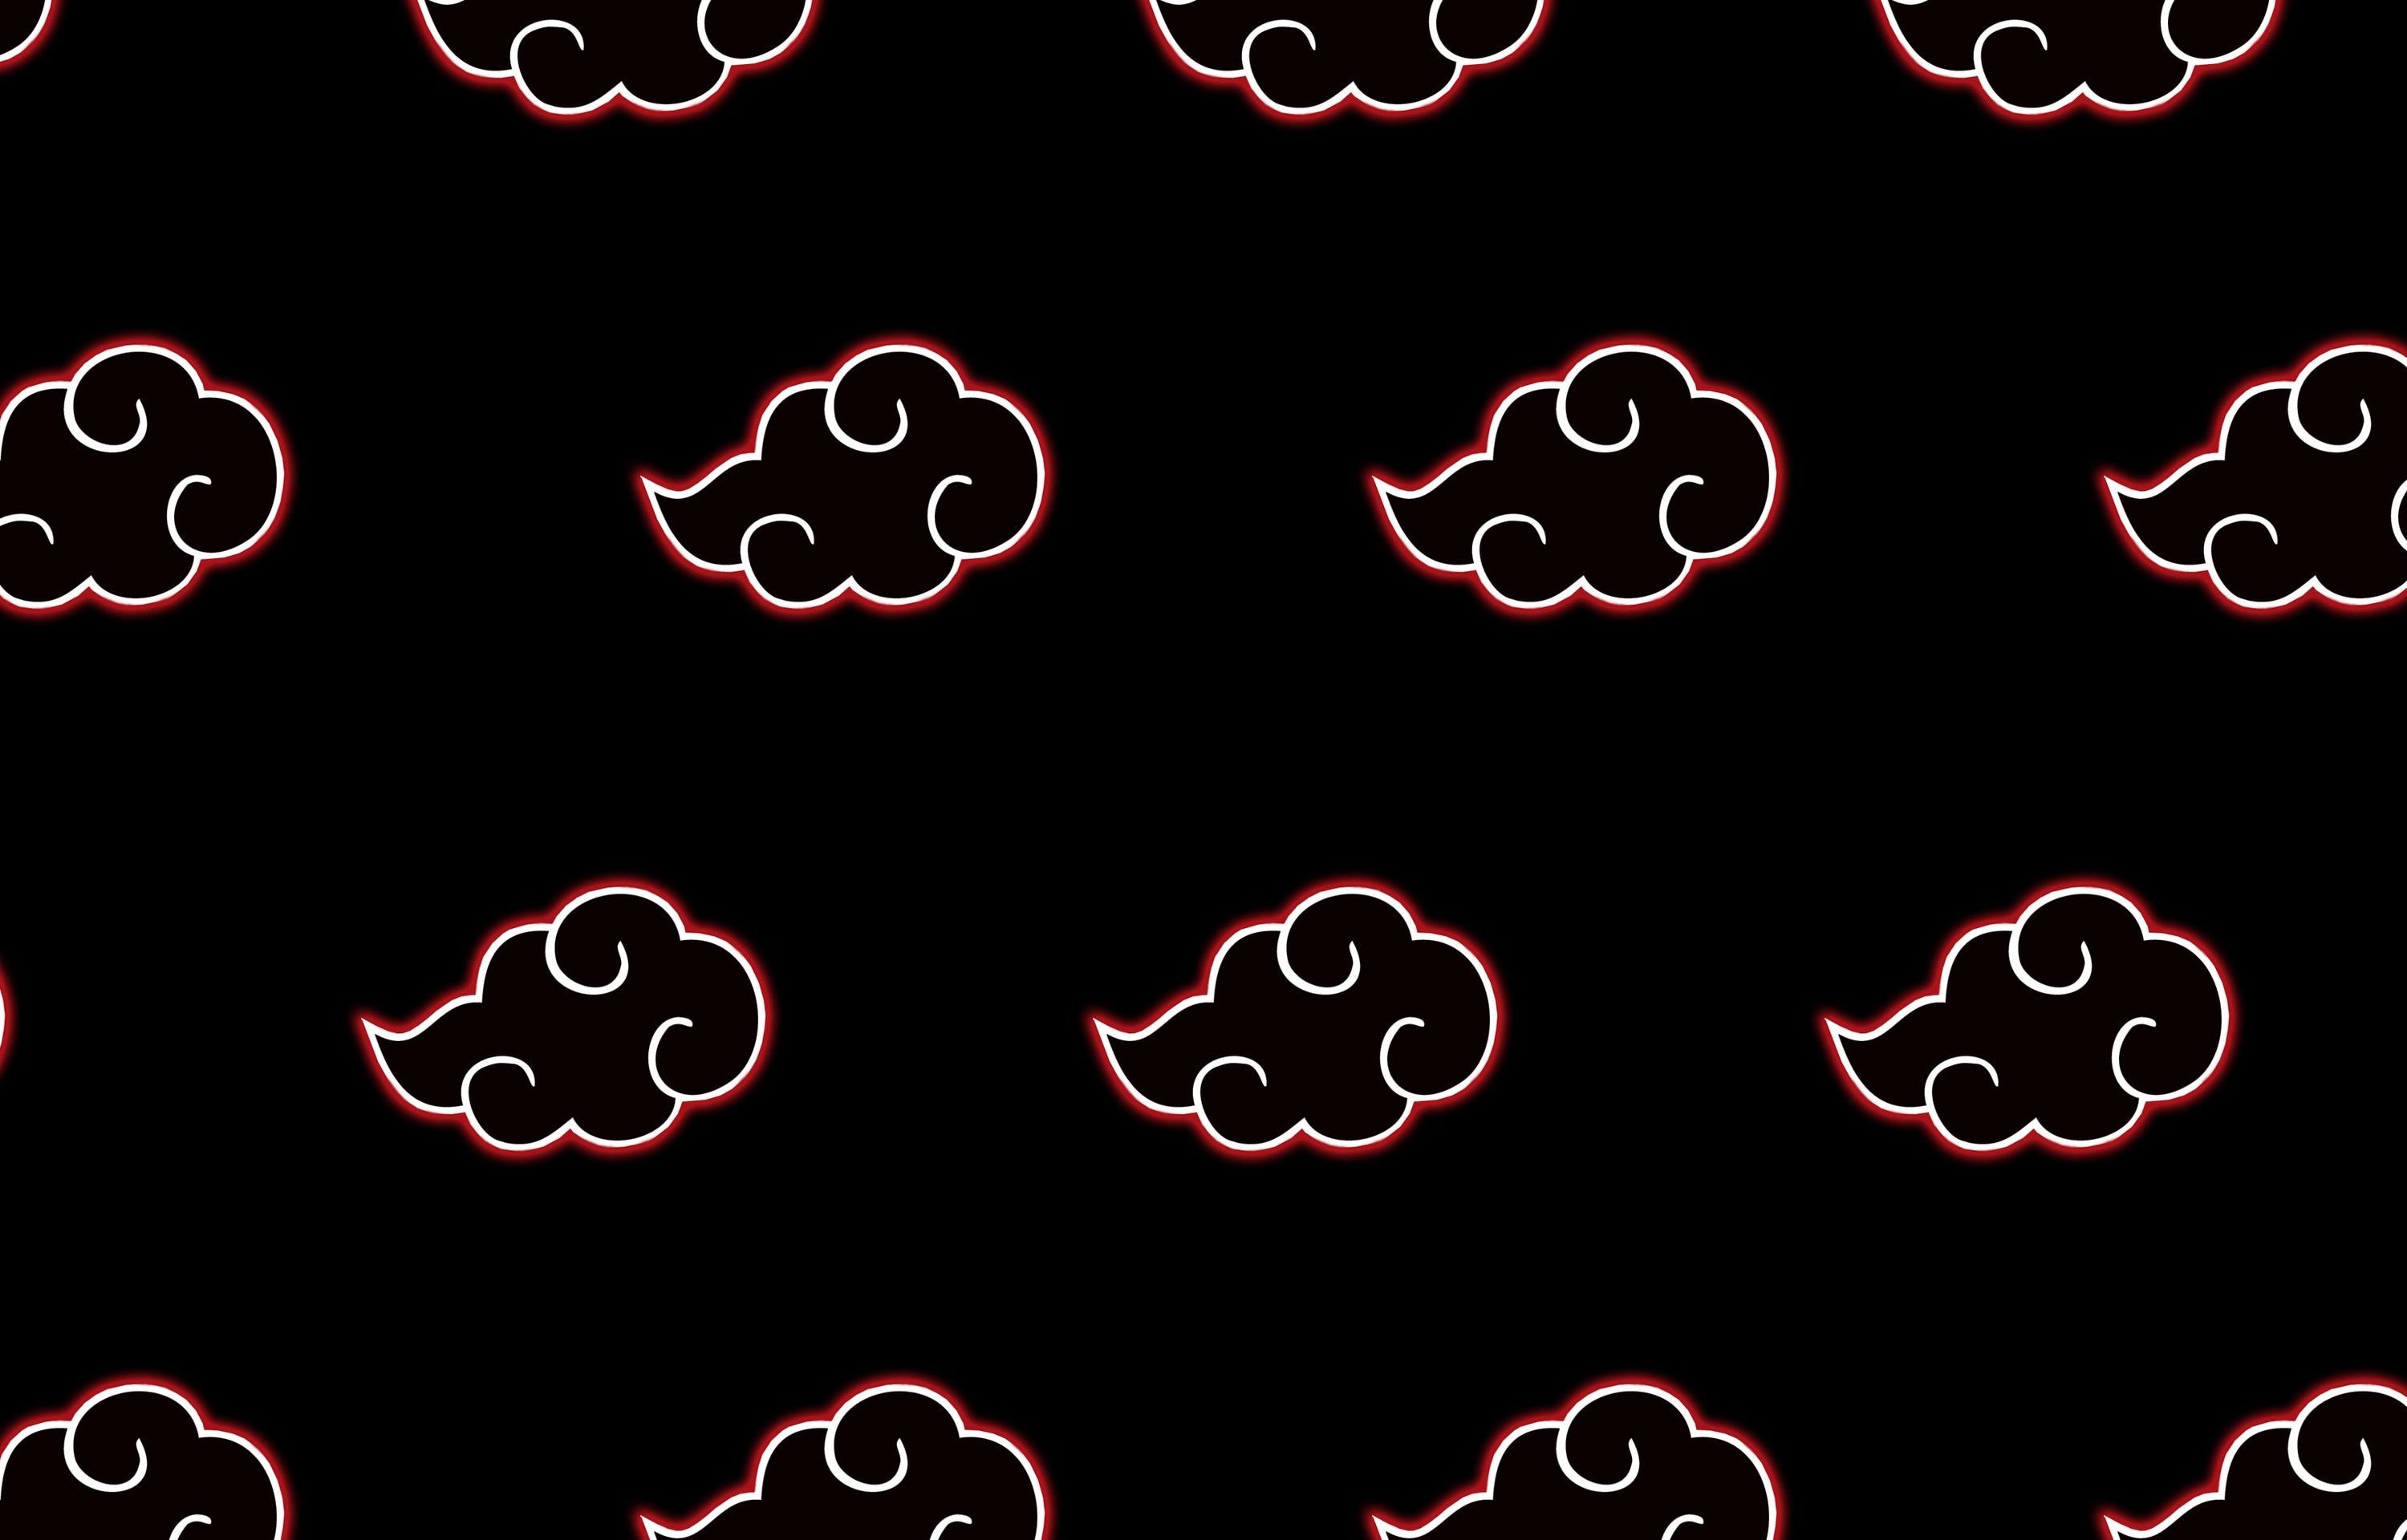 Akatsuki Cloud 4k iPhone Wallpapers - Wallpaper Cave